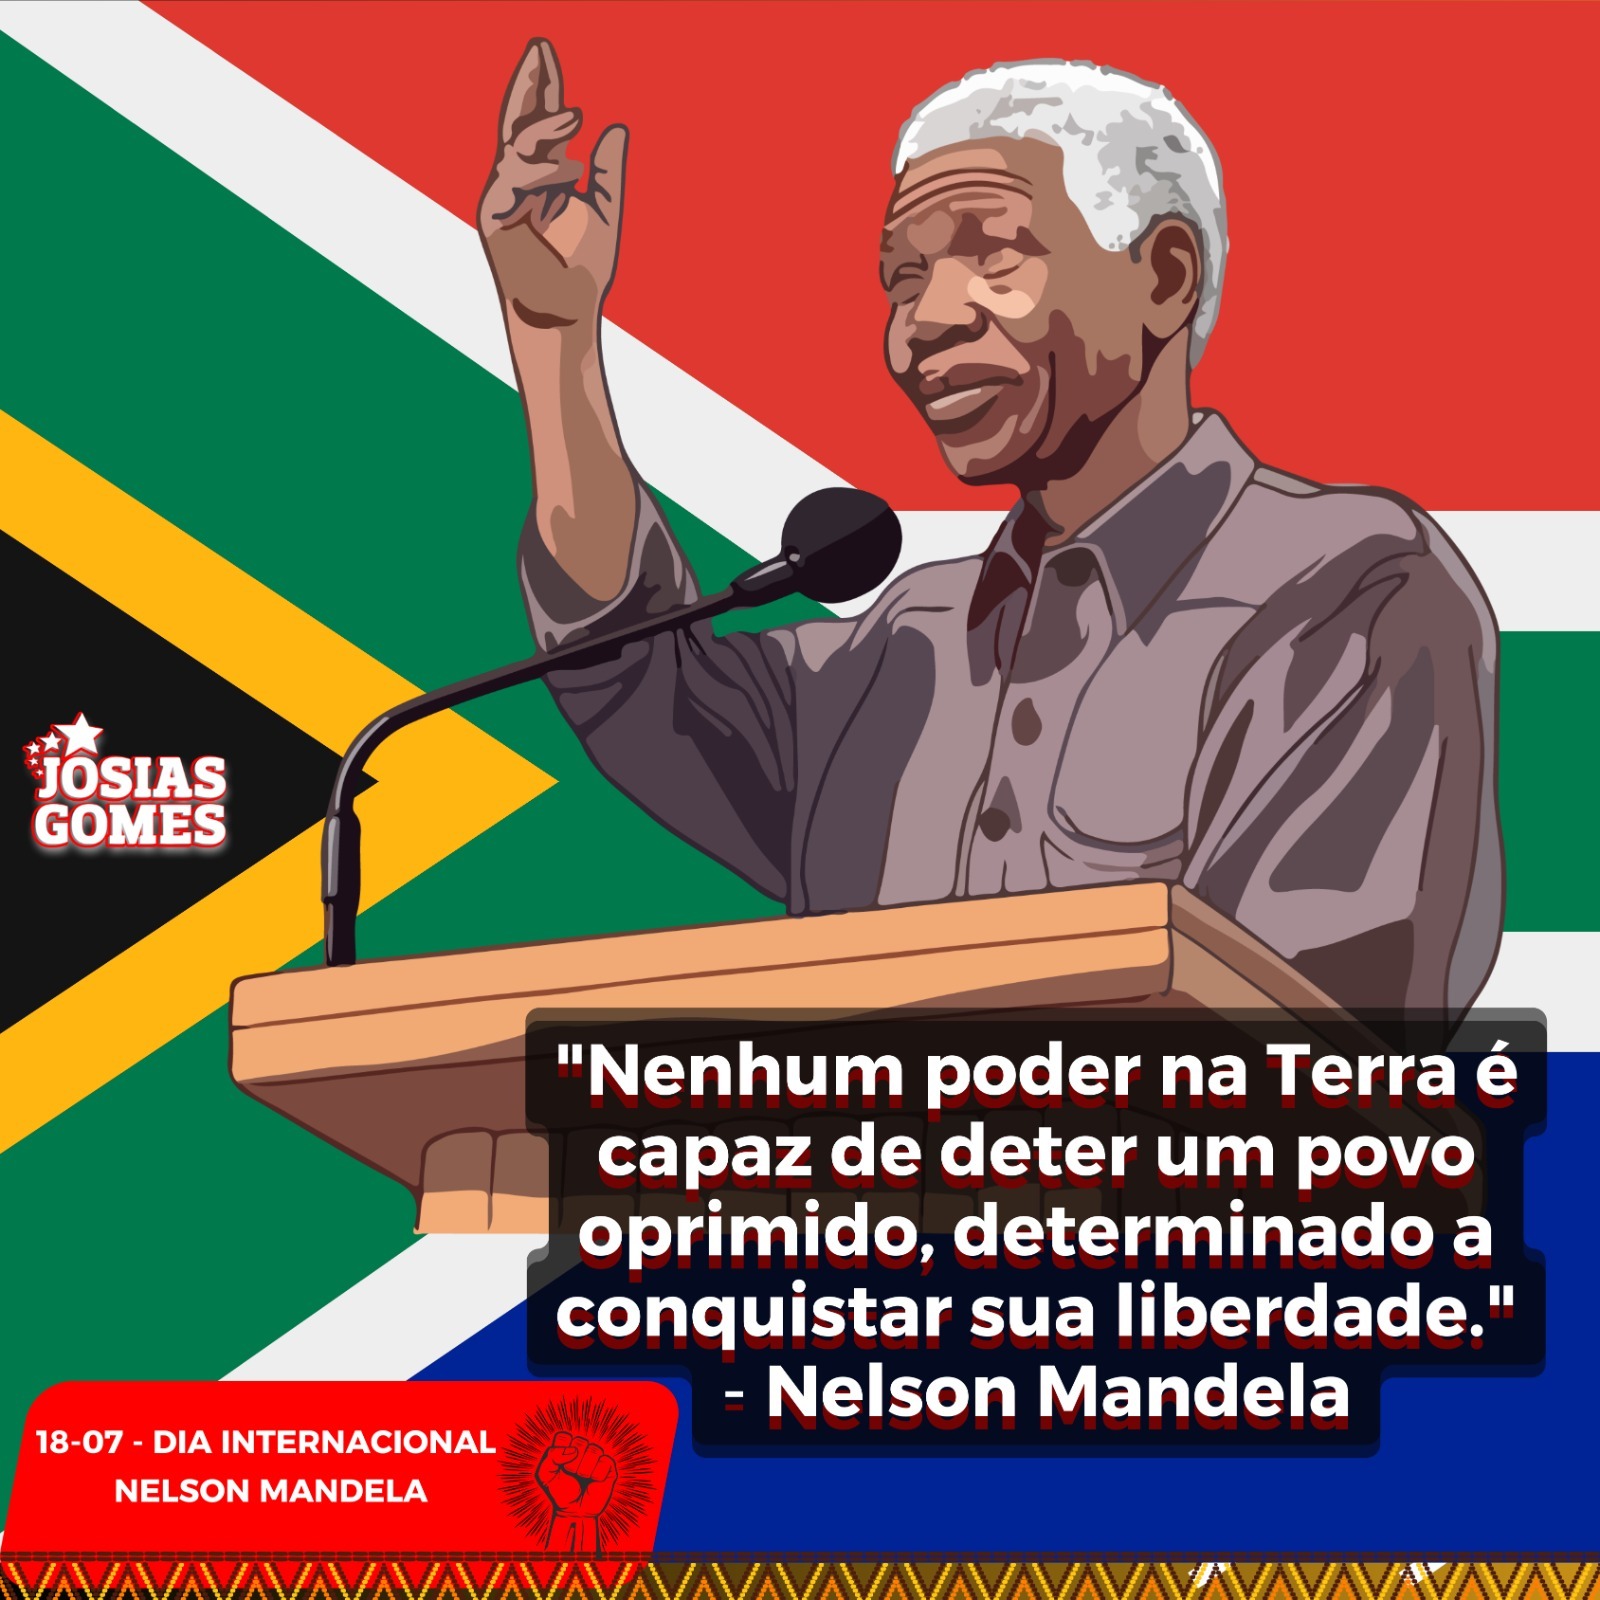 Viva Nelson Mandela! O Condor Que Trouxe Luz E O Grito De Liberdade Dos Oprimidos.